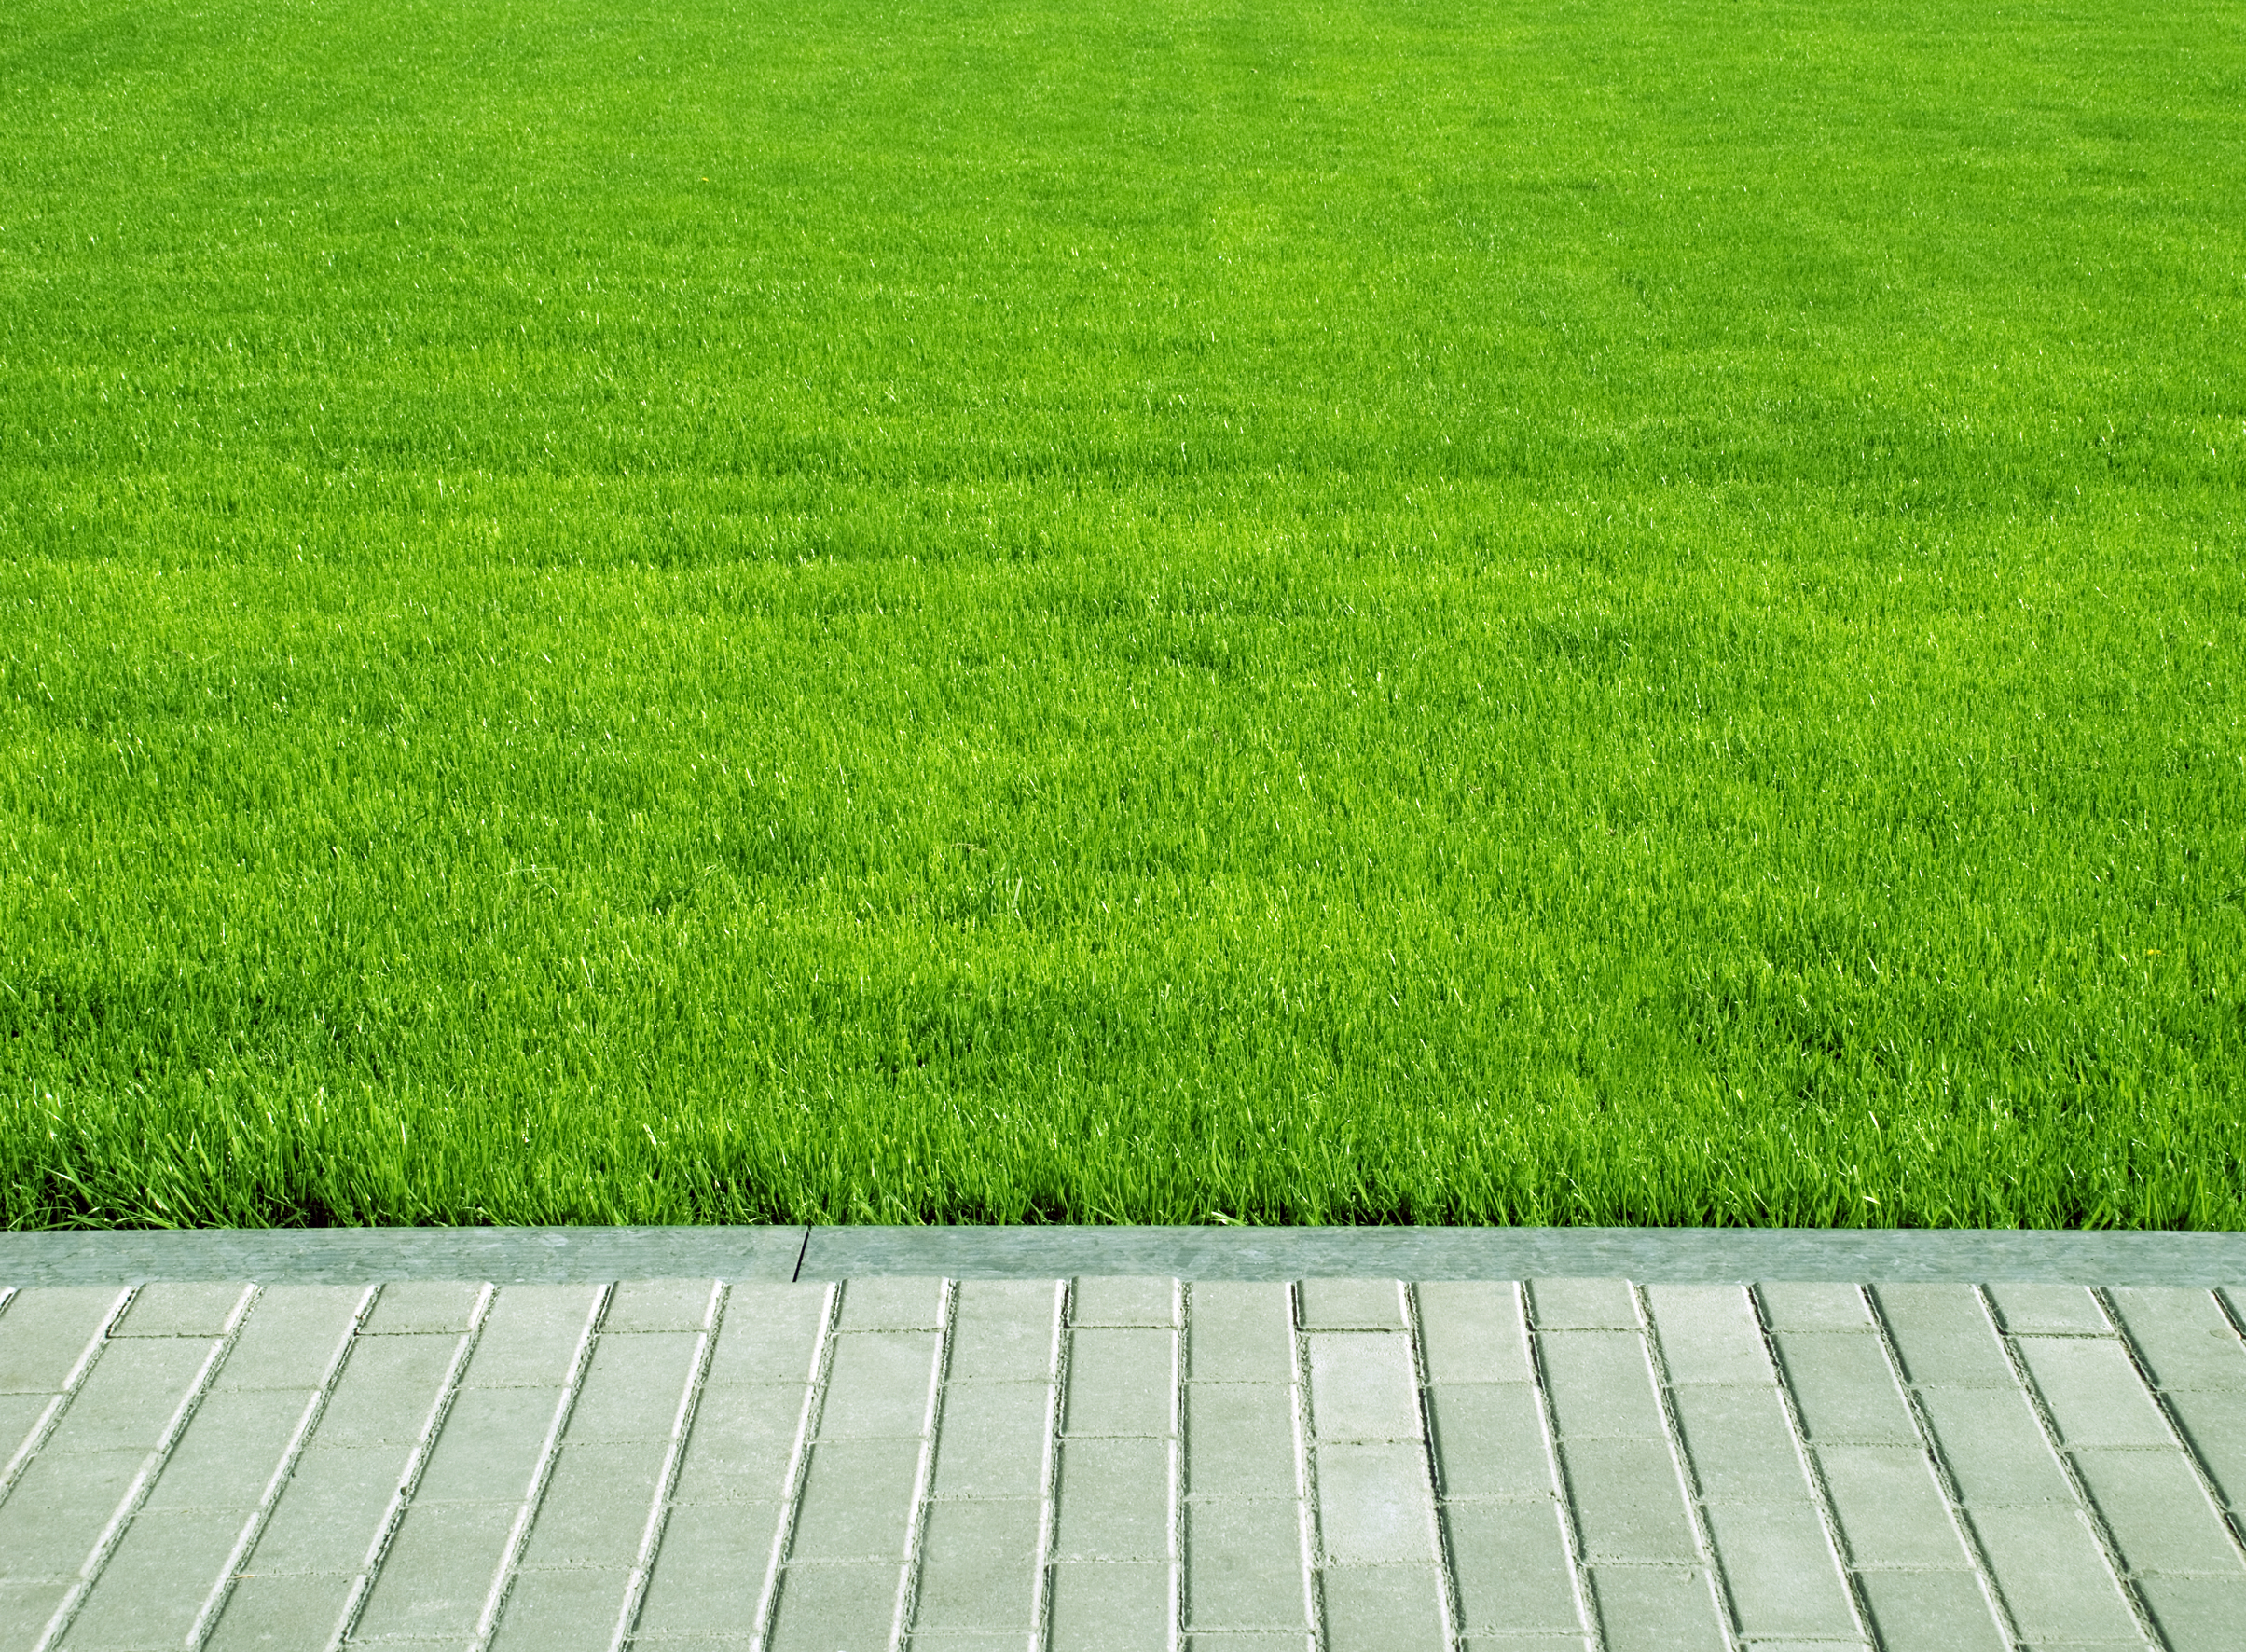 Healthy Green Lawn